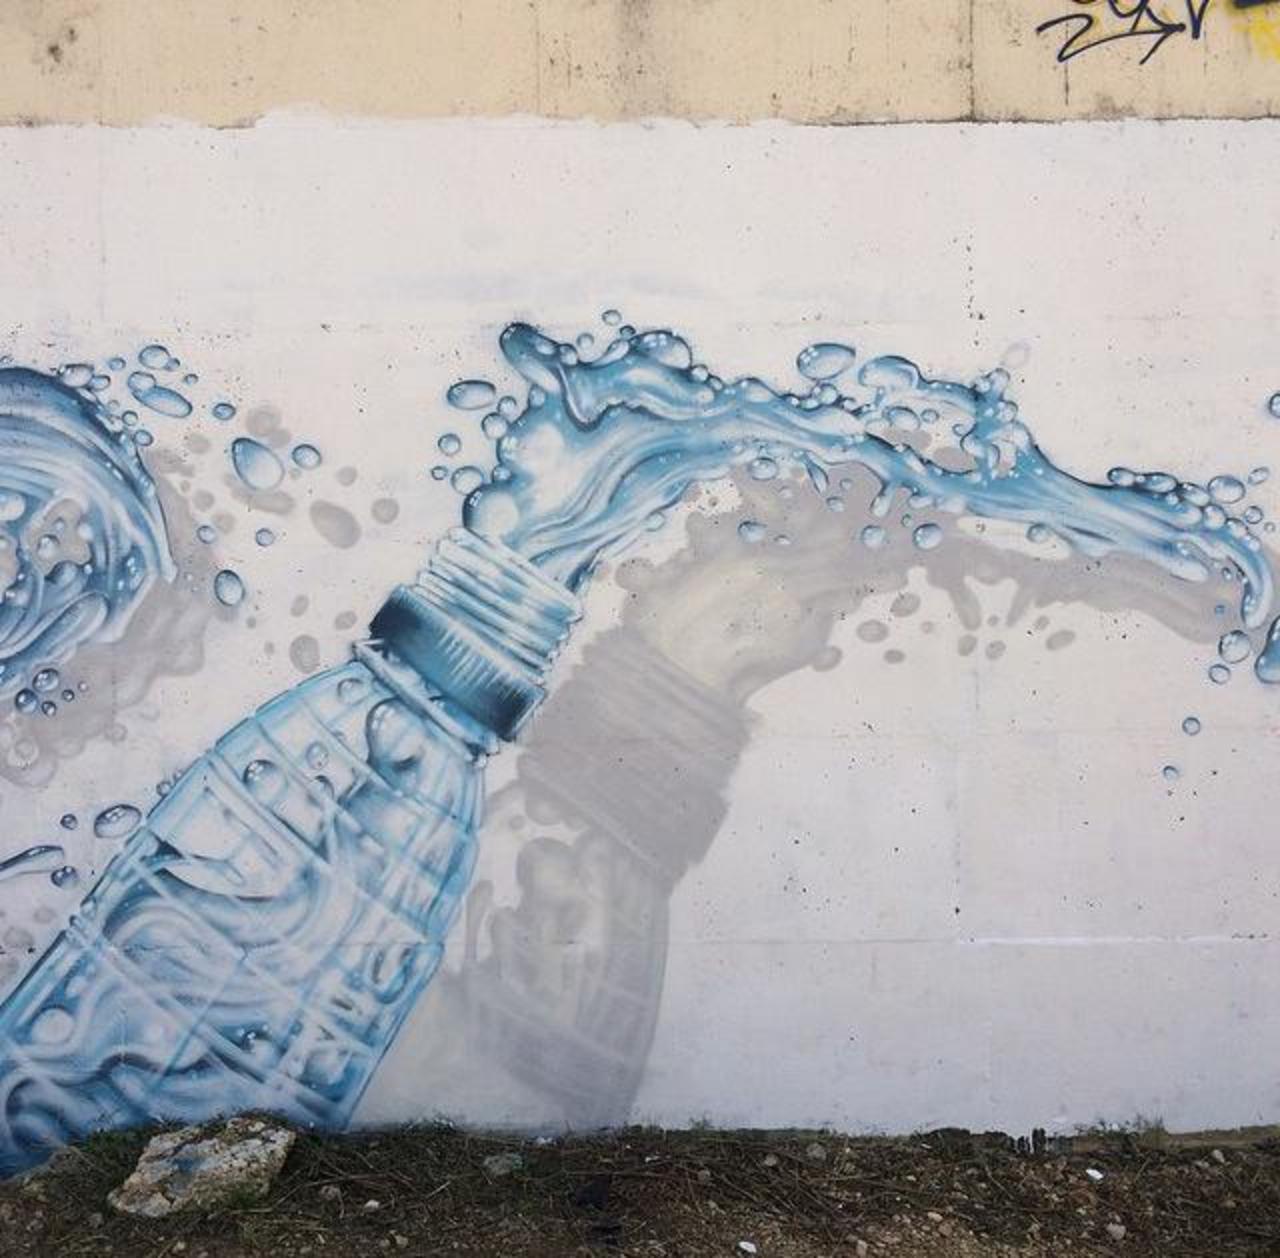 'Bottle'
Class new Street Art by JeazeOner 

#art #arte #graffiti #streetart http://t.co/zzlFJueePR